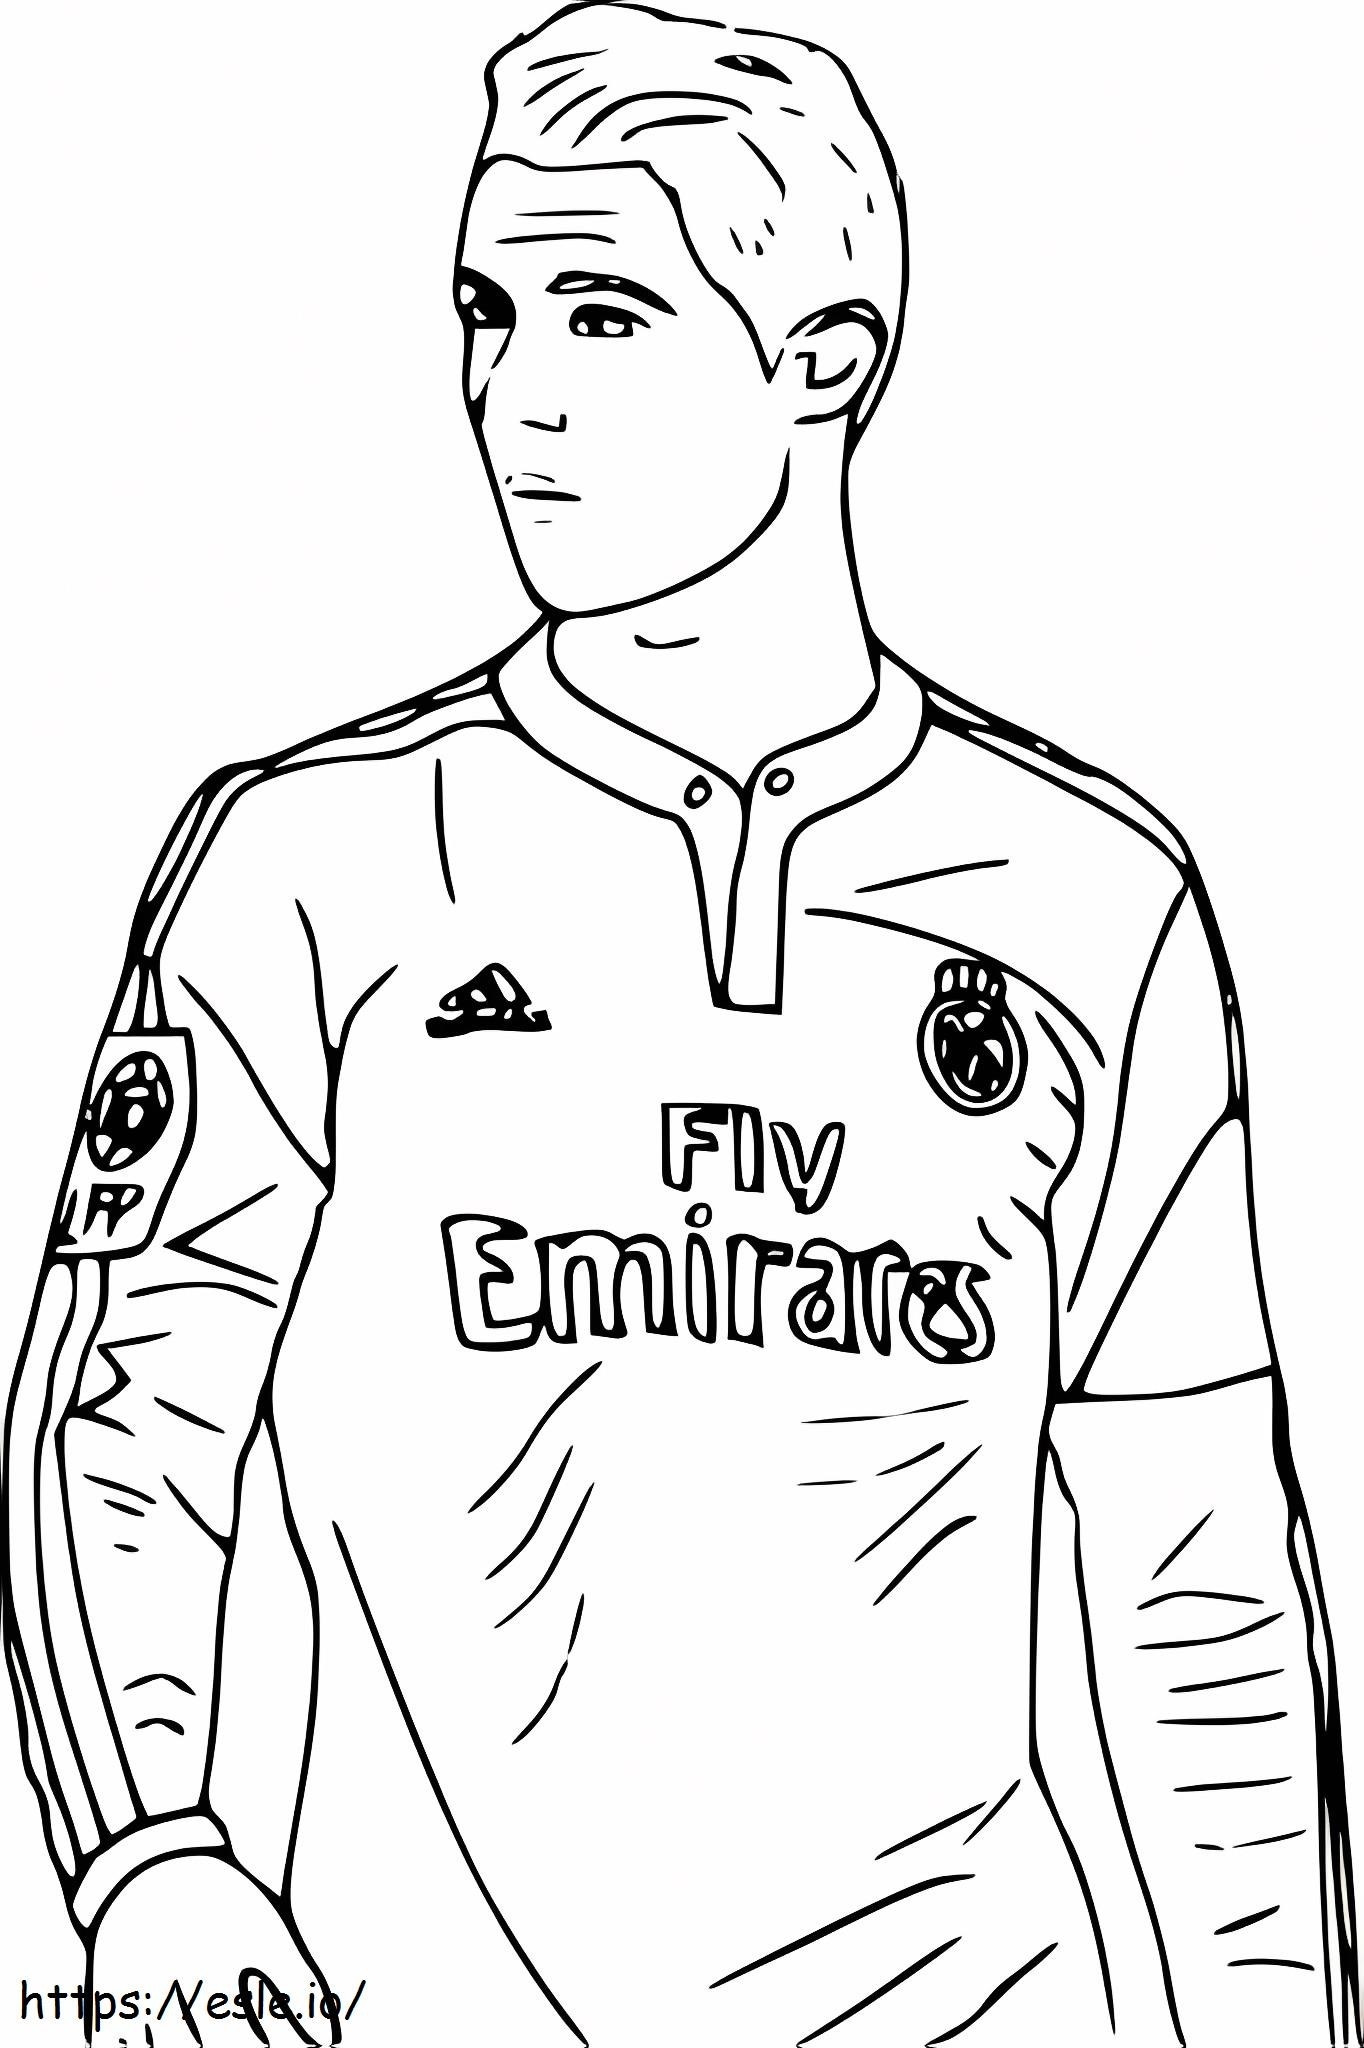 Face Cristiano Ronaldo coloring page